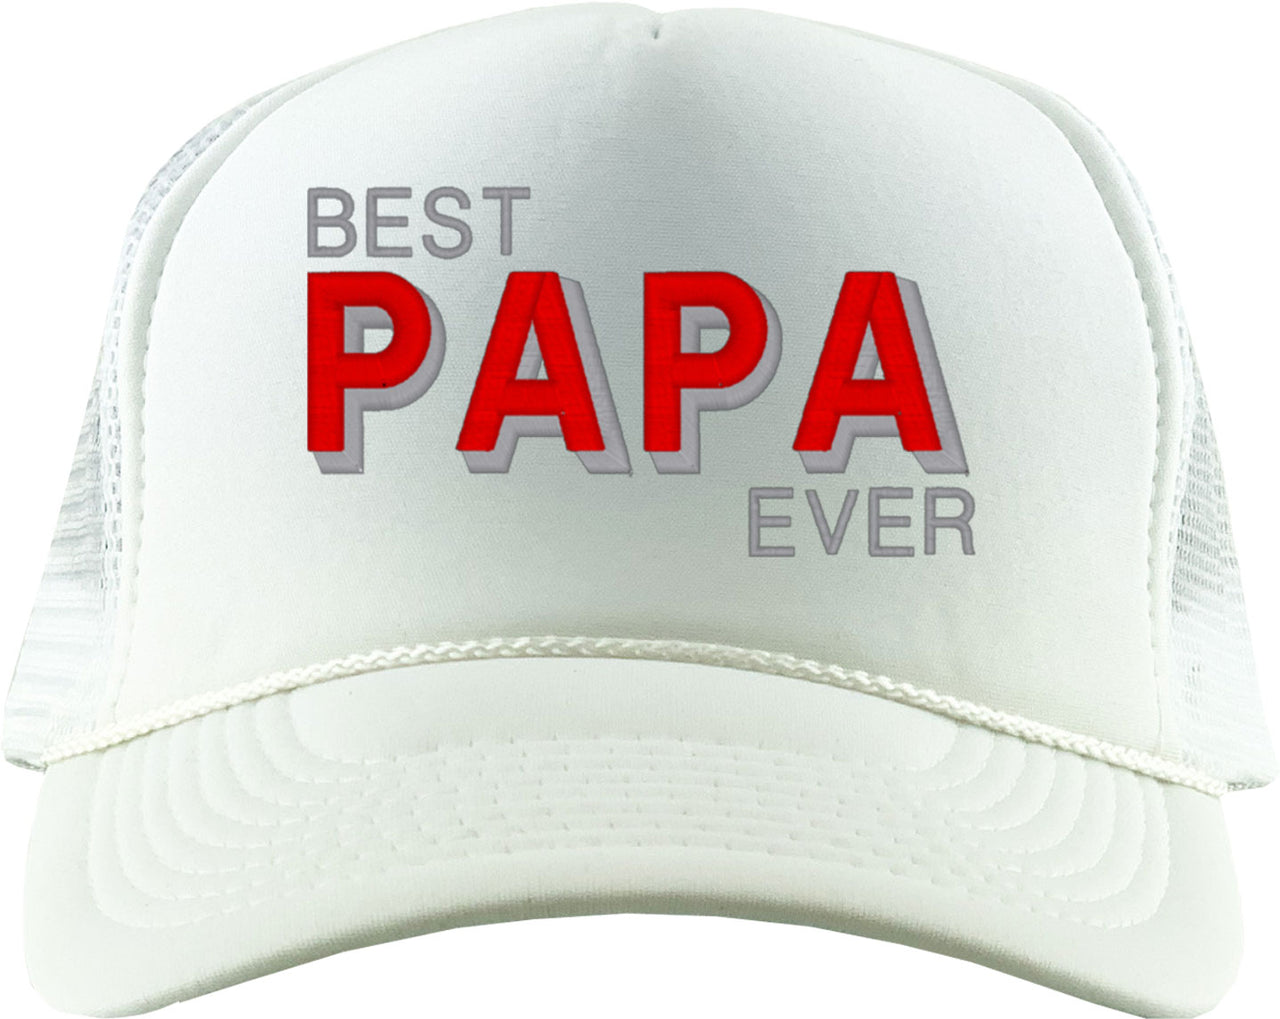 Best Papa Ever Foam Trucker Hat